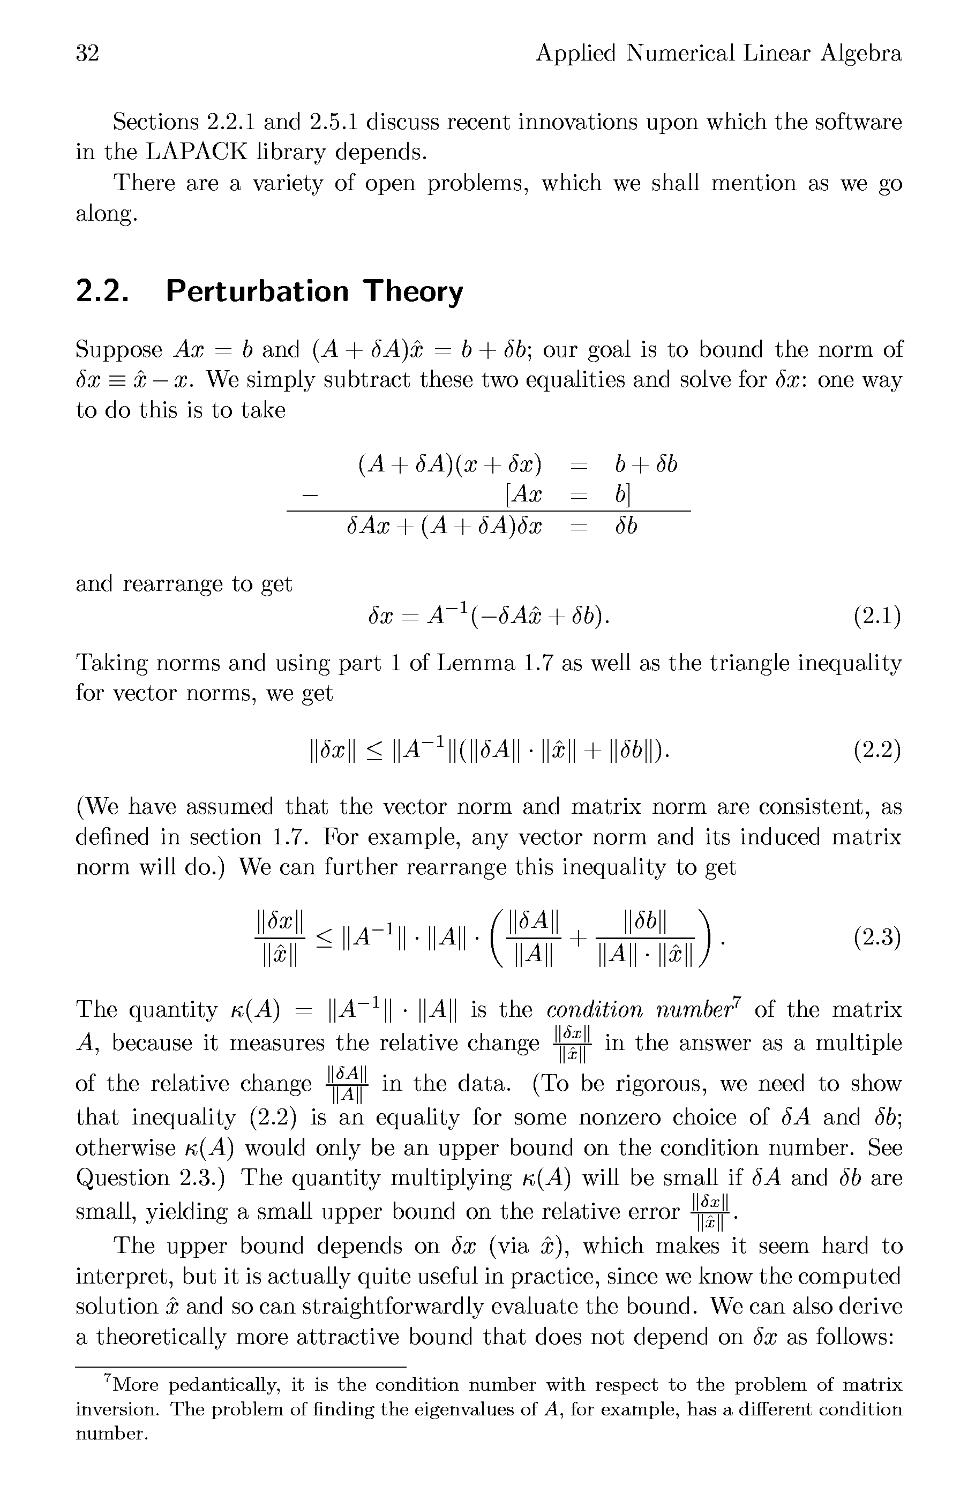 2.2 Perturbation Theory